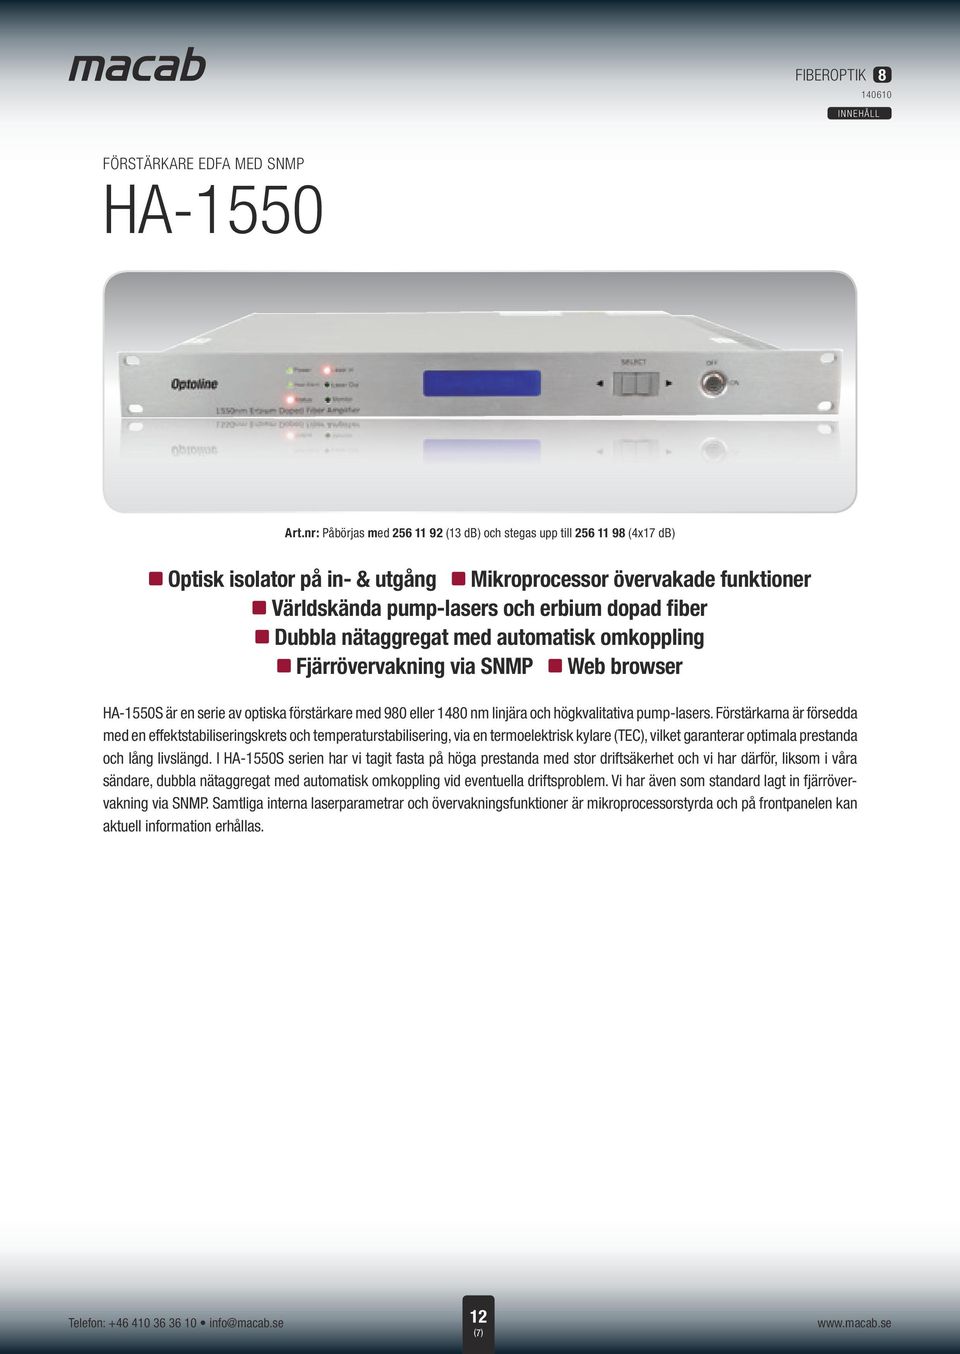 via SNMP z browser HA-1550S är en serie av optiska förstärkare med 980 eller 1480 nm linjära och högkvalitativa pump-lasers.